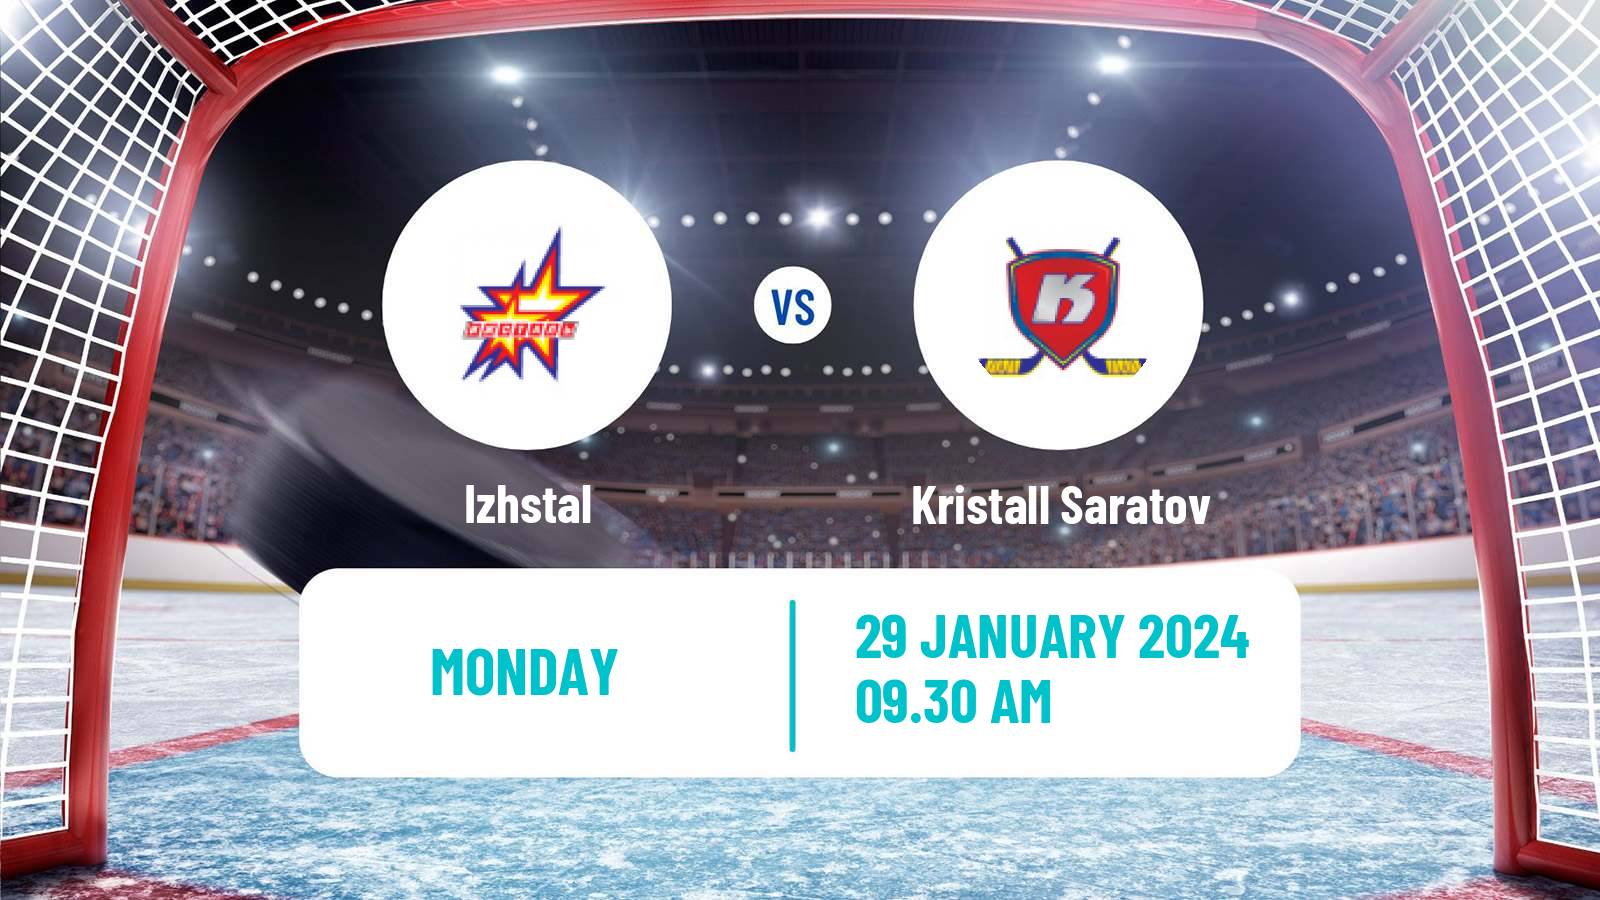 Hockey VHL Izhstal - Kristall Saratov